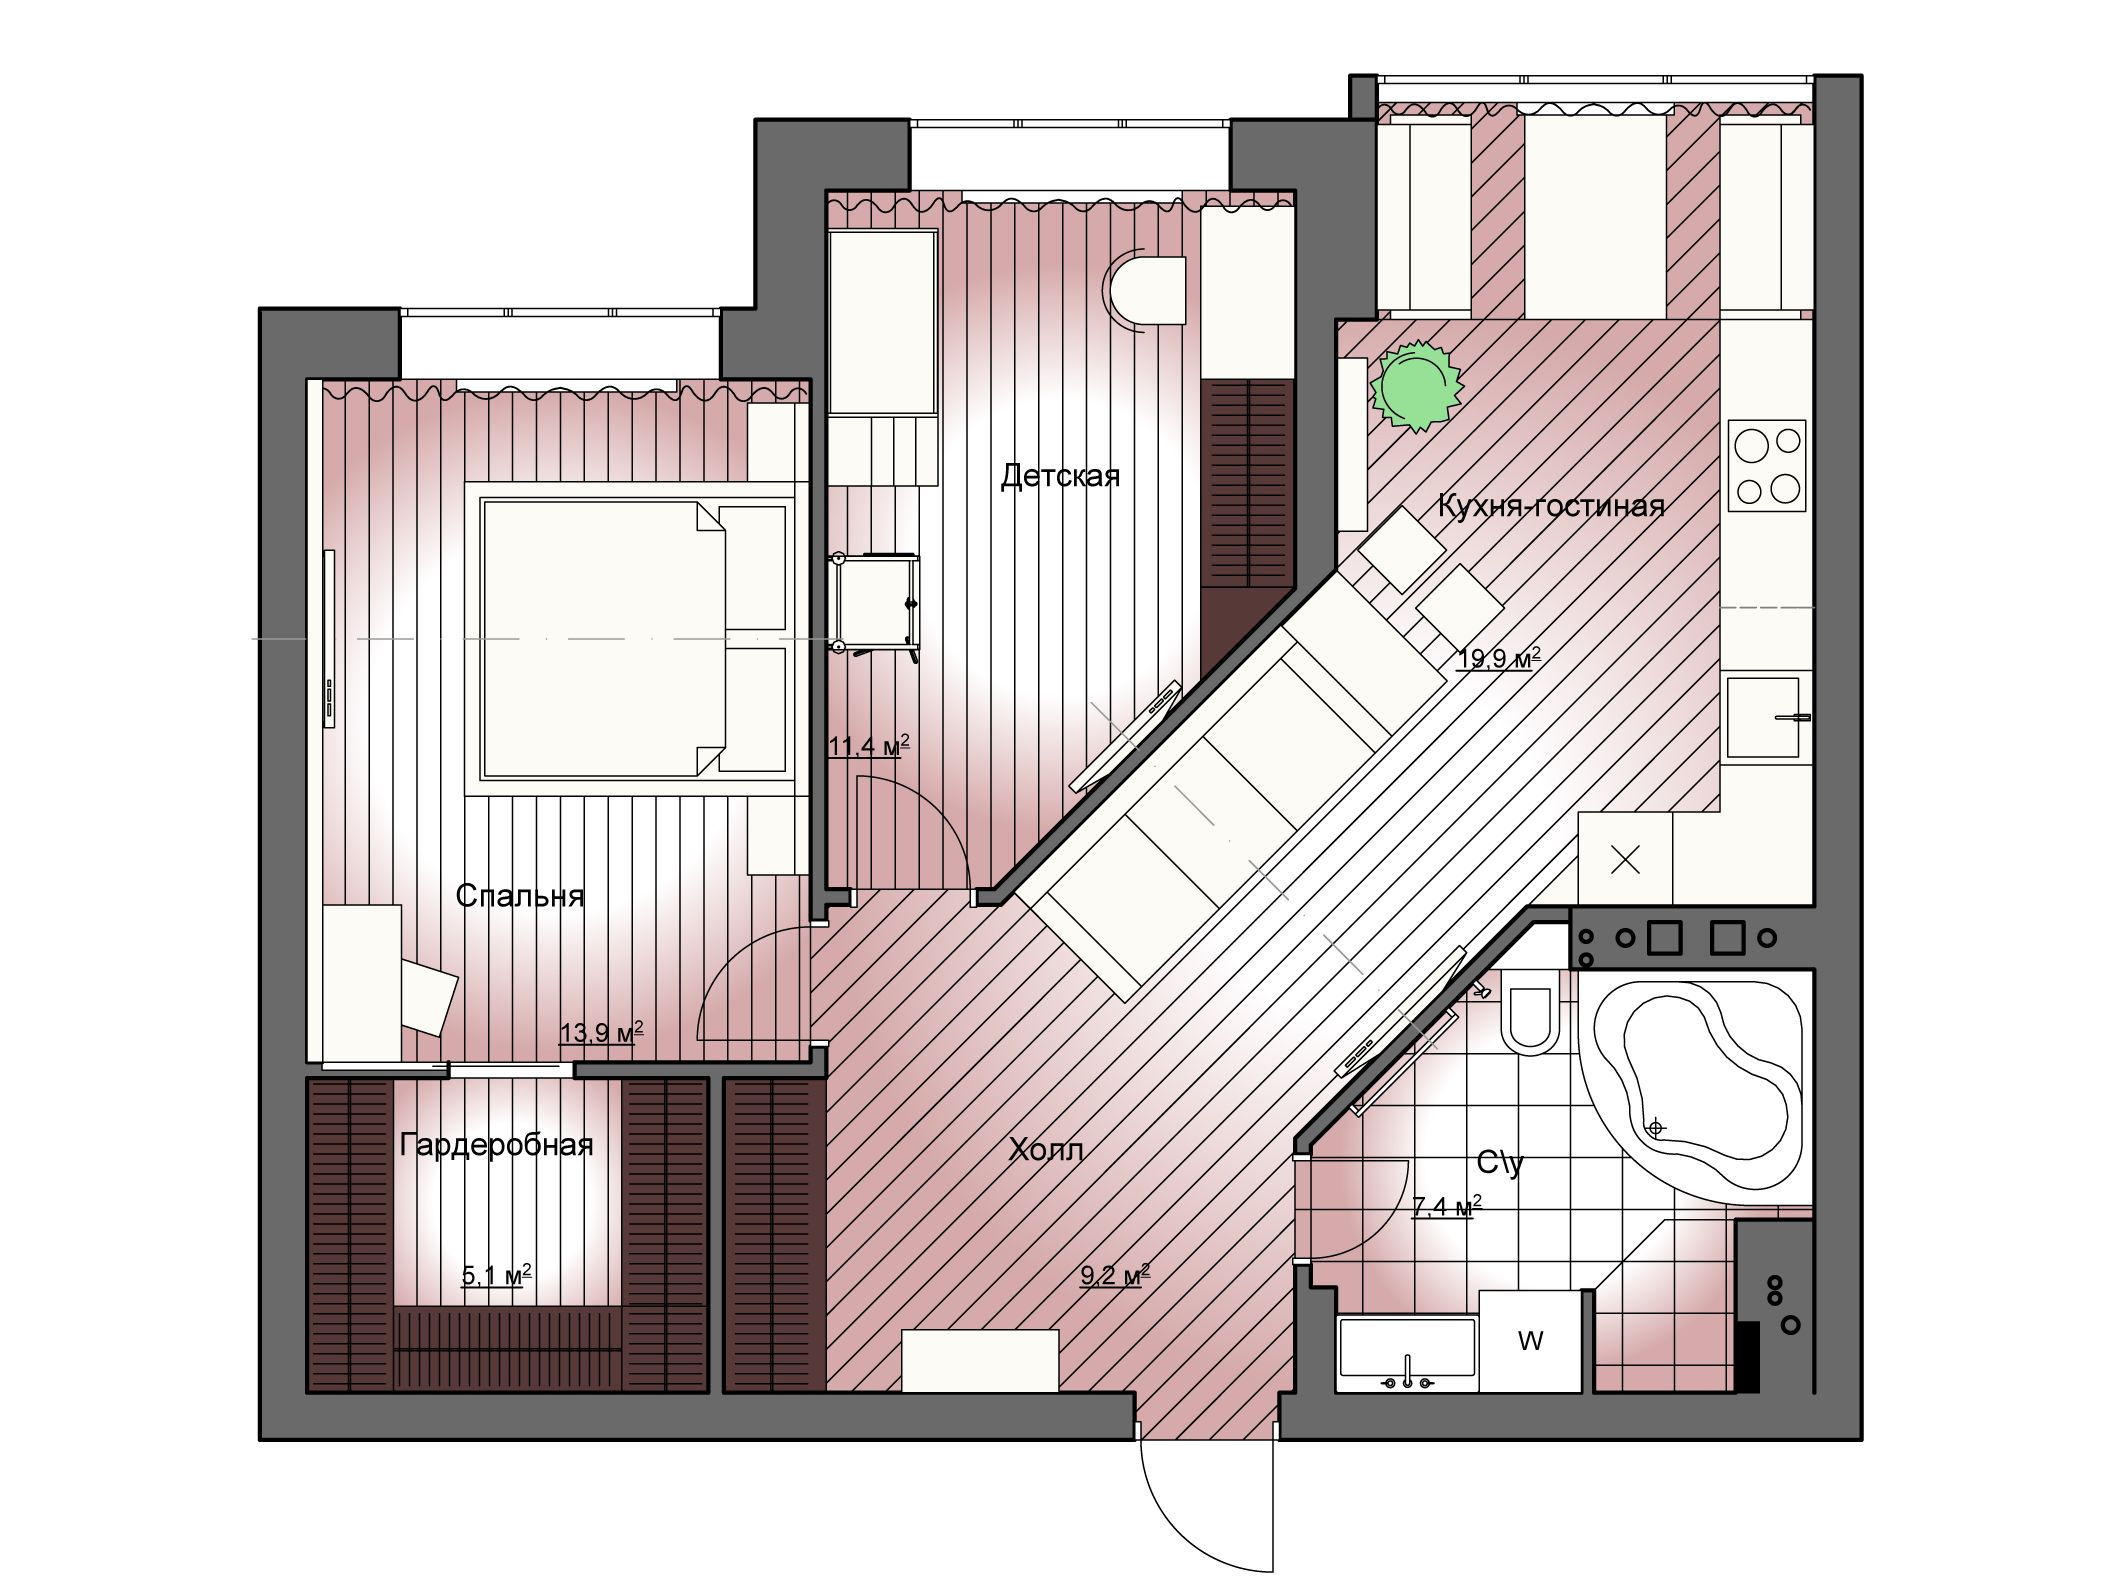 Двухкомнатная квартира 60 кв. м: дизайн и планировочные решения